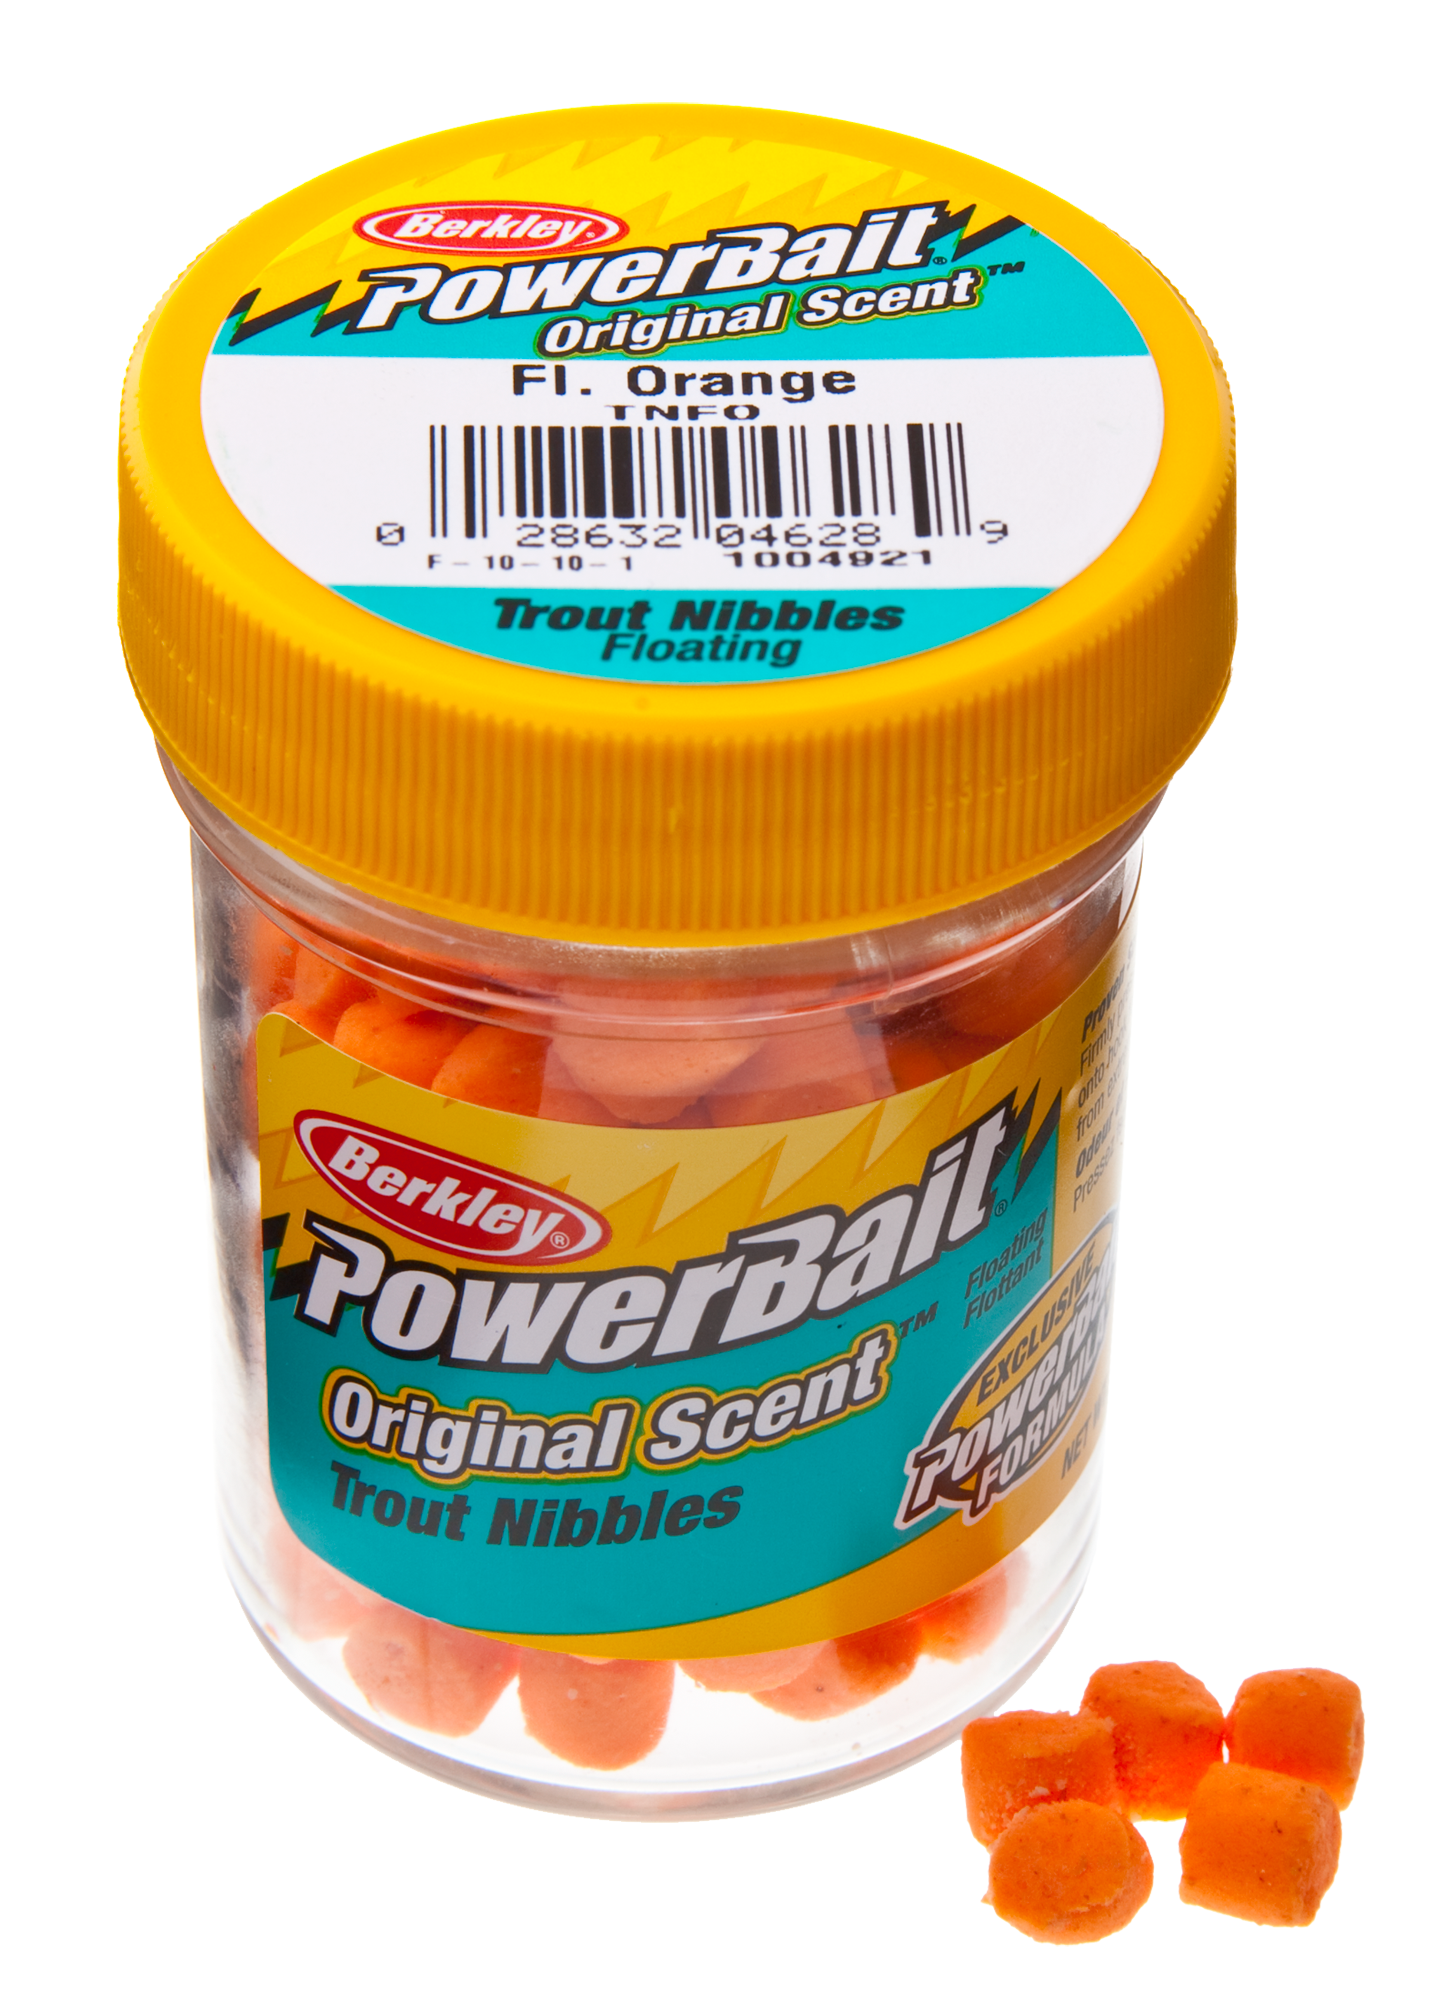 PowerBait Trout Bait Fluorescent Orange, Attractants -  Canada